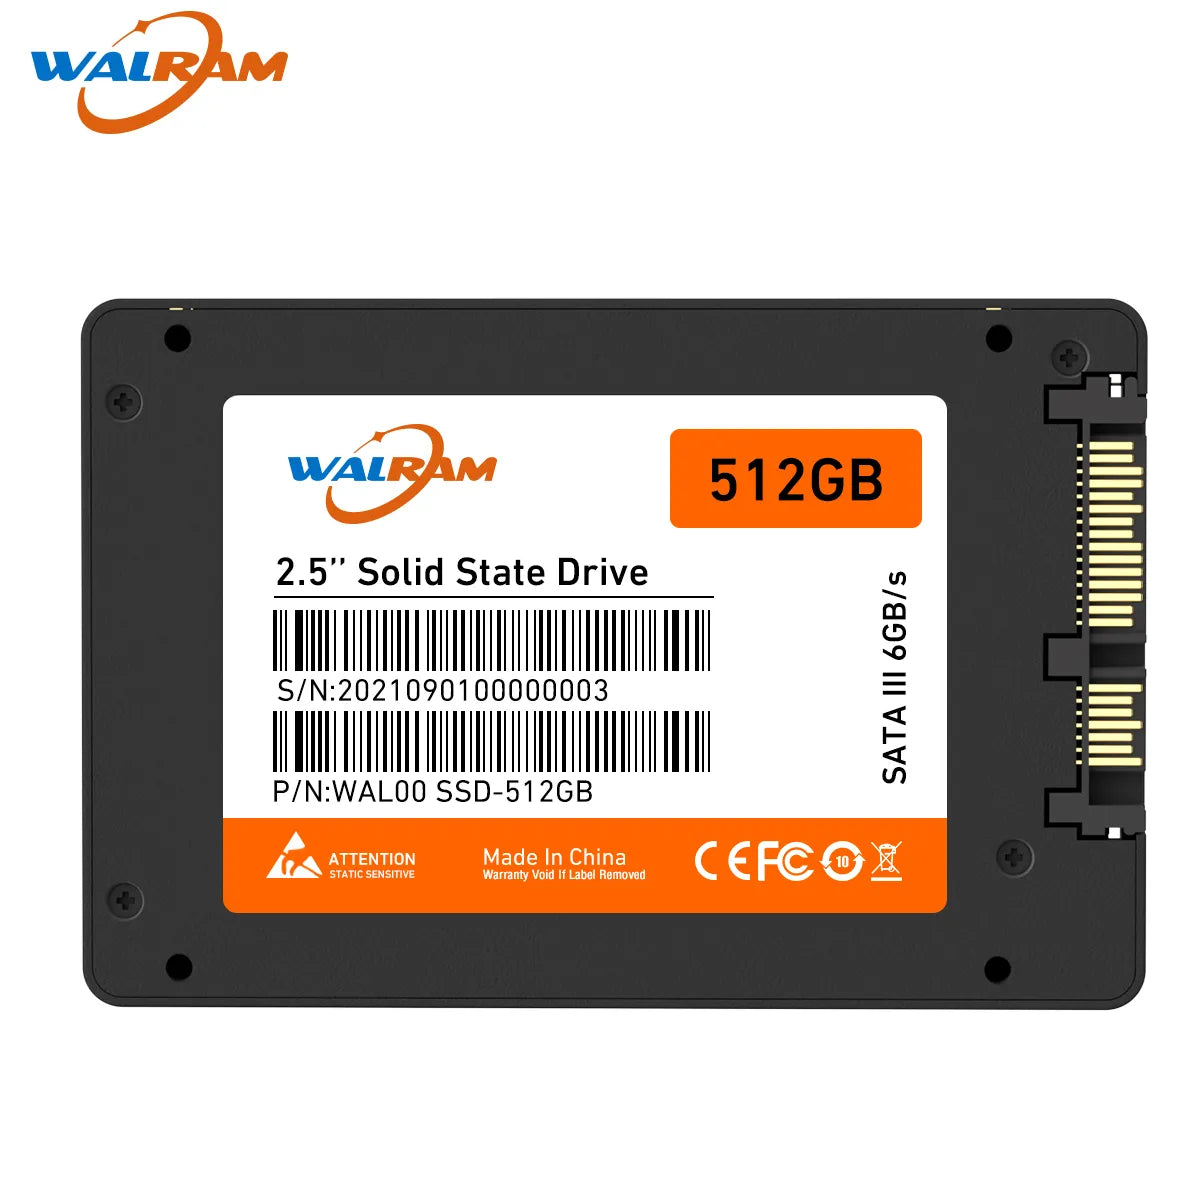 WALRAM SSD: High-Performance Storage with Impressive Speeds  ourlum.com   